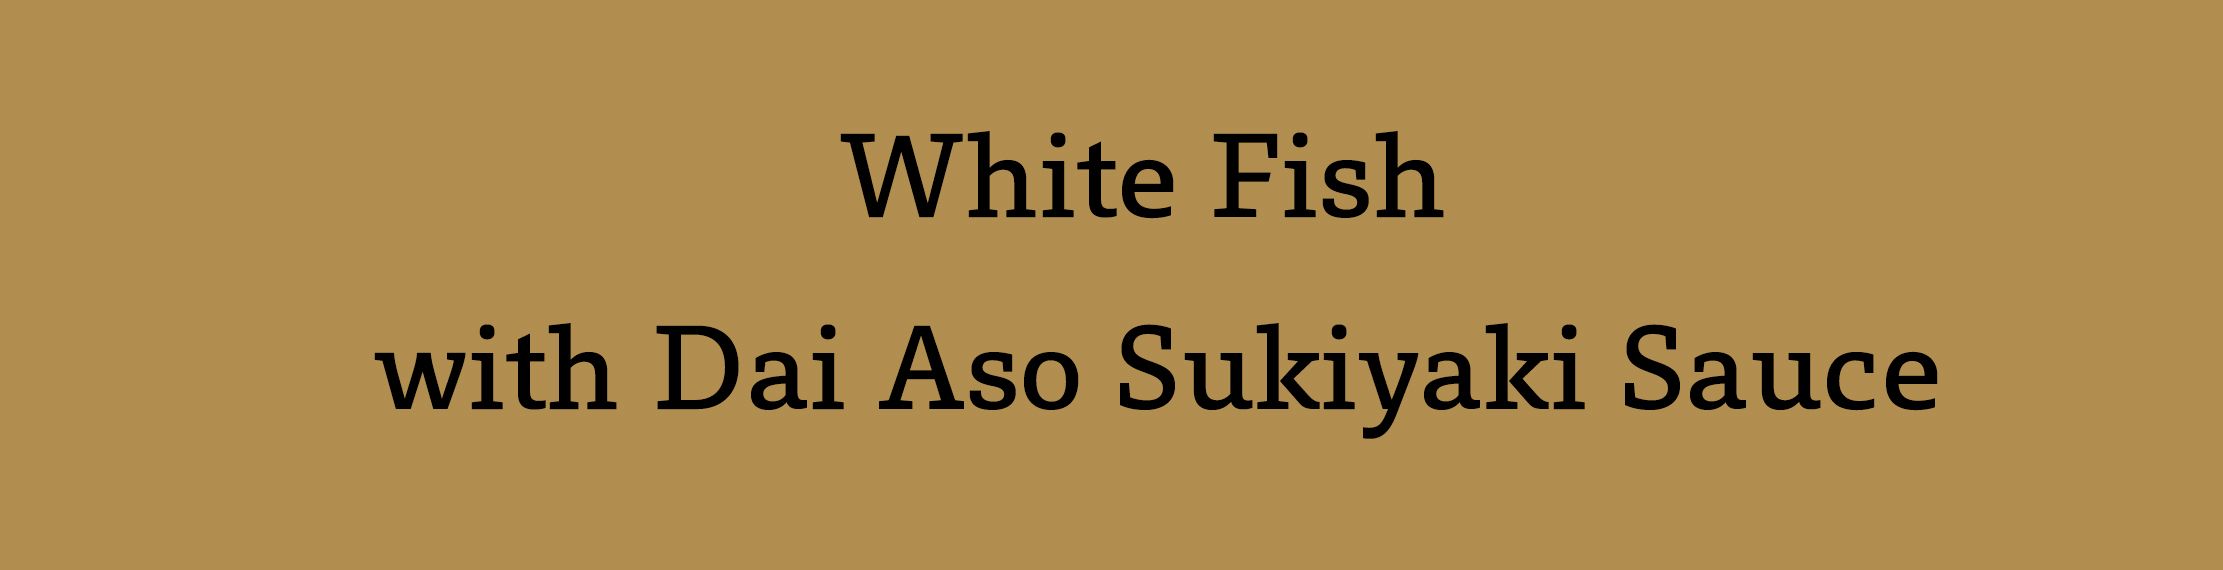 White Fish with Dai Aso Sukiyaki Sauce